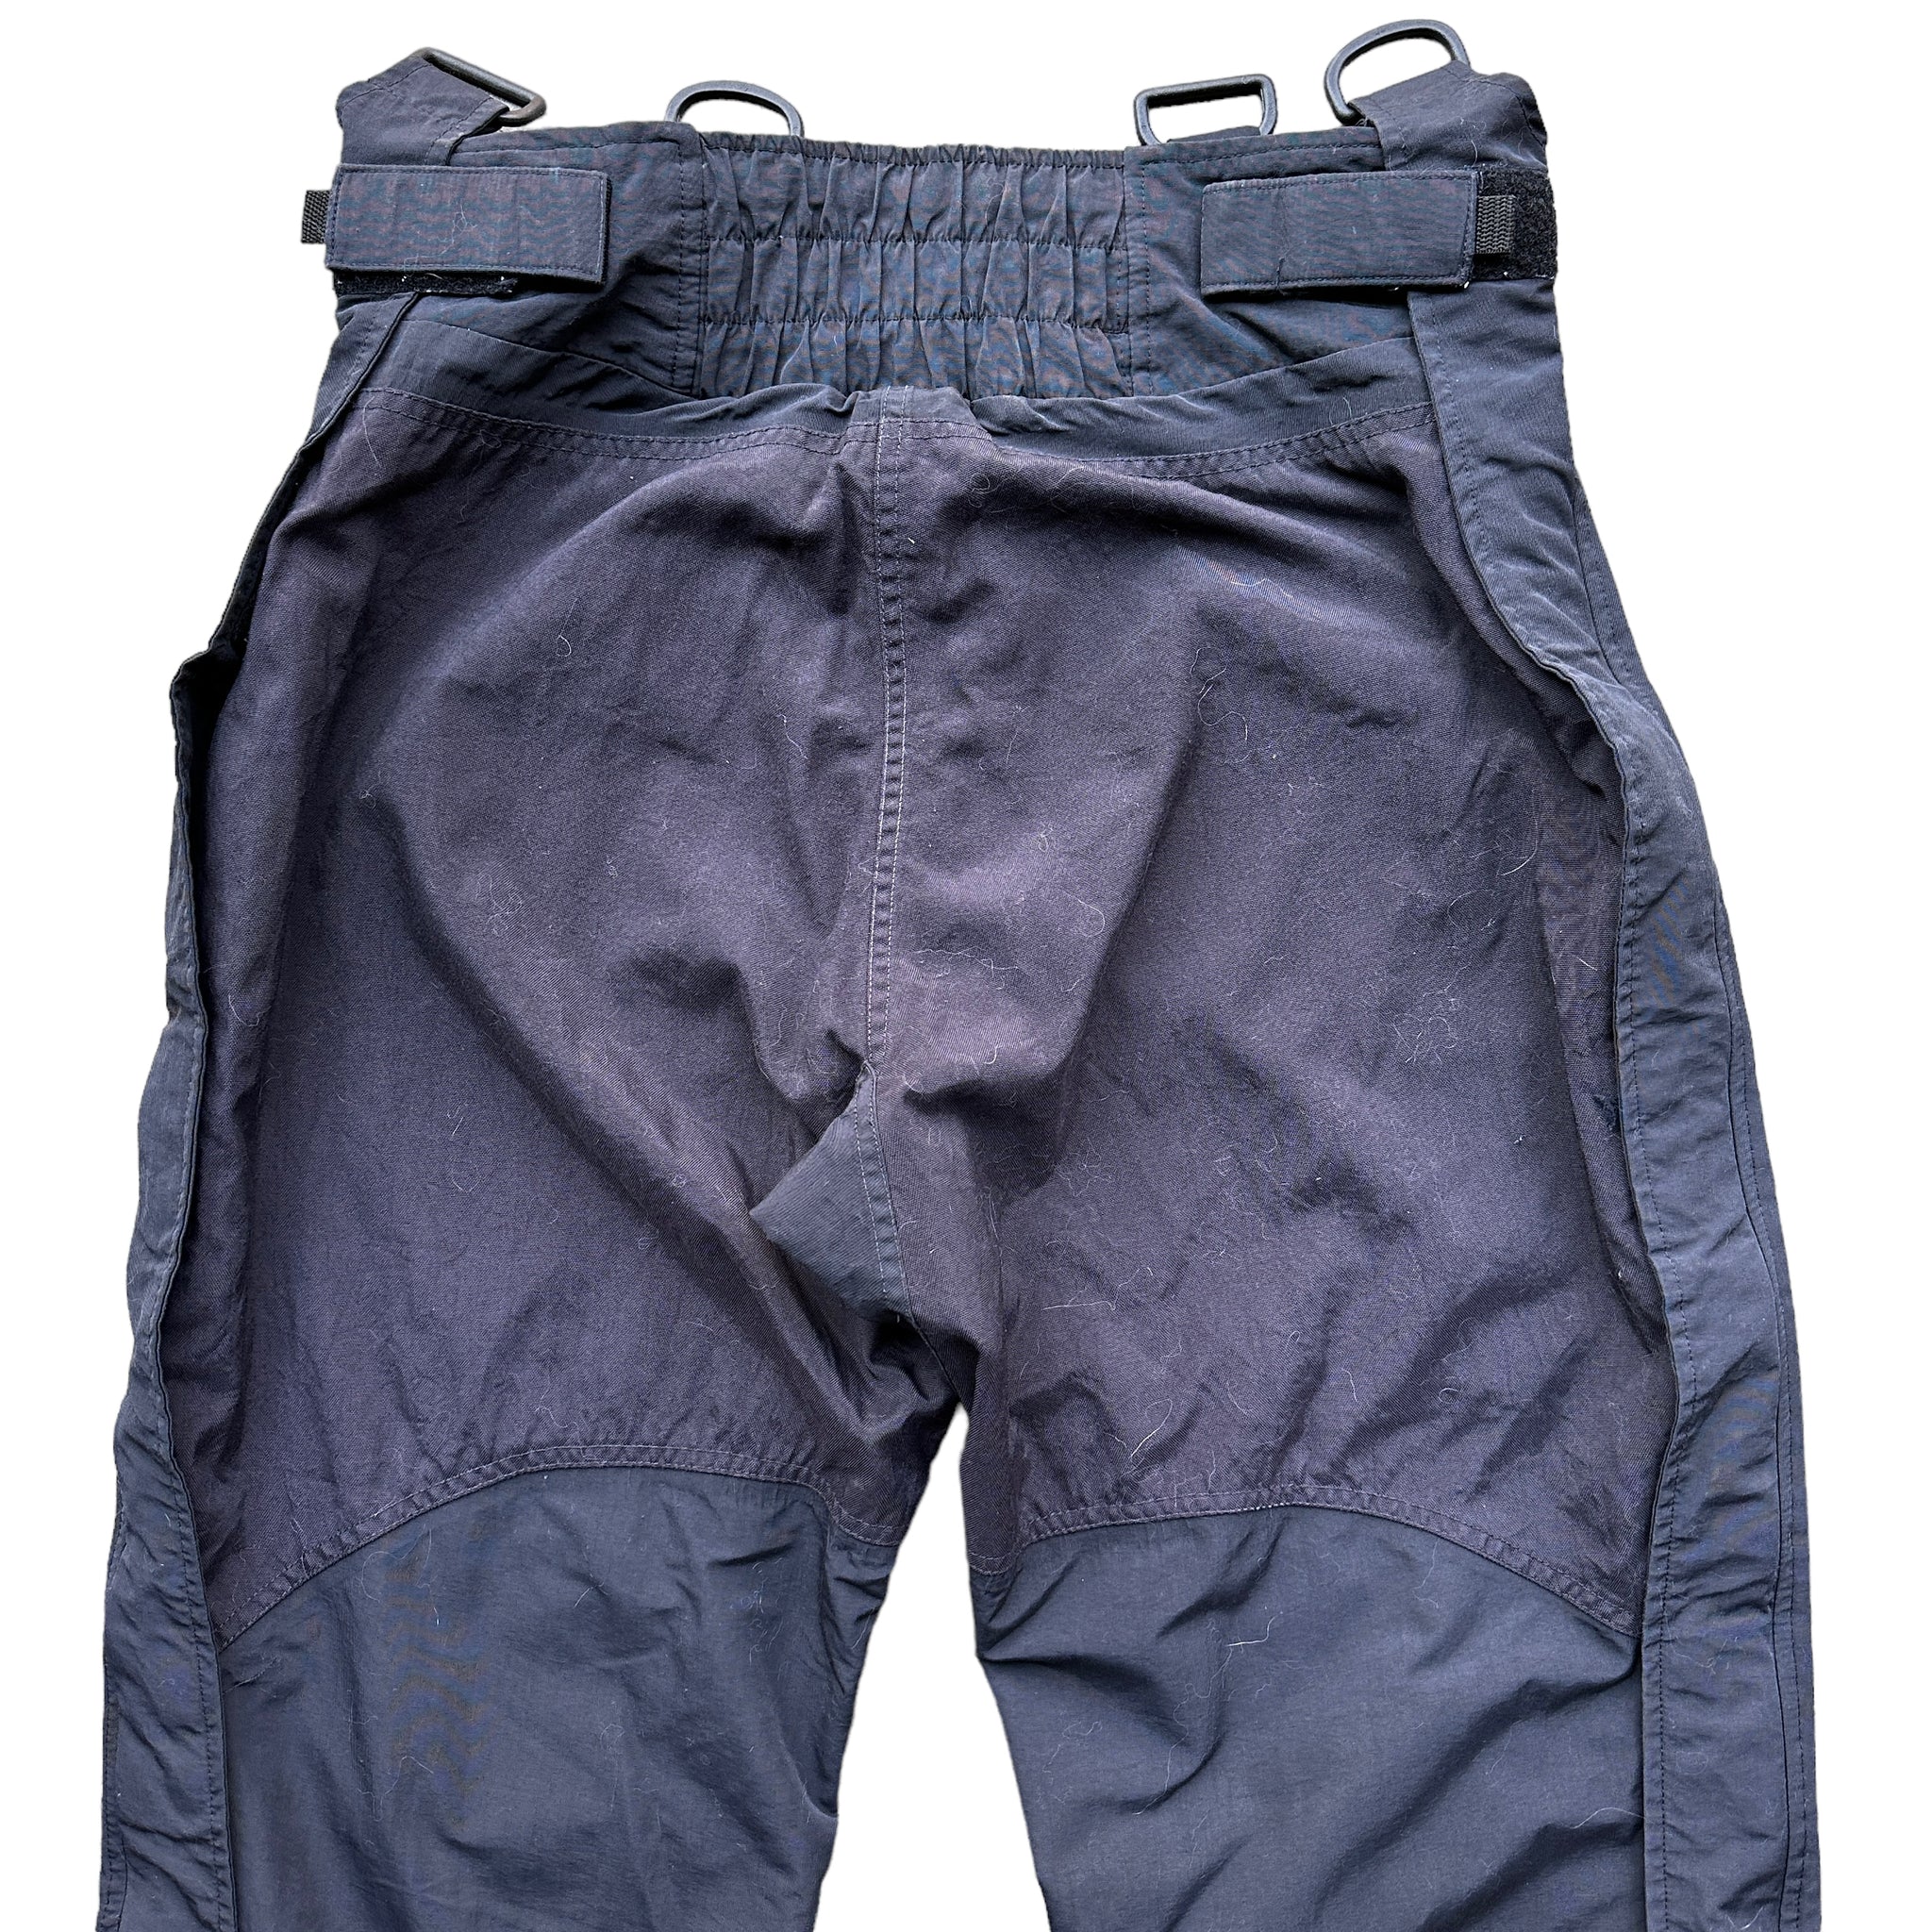 90s Burton snowboard pants 
L/XL fit